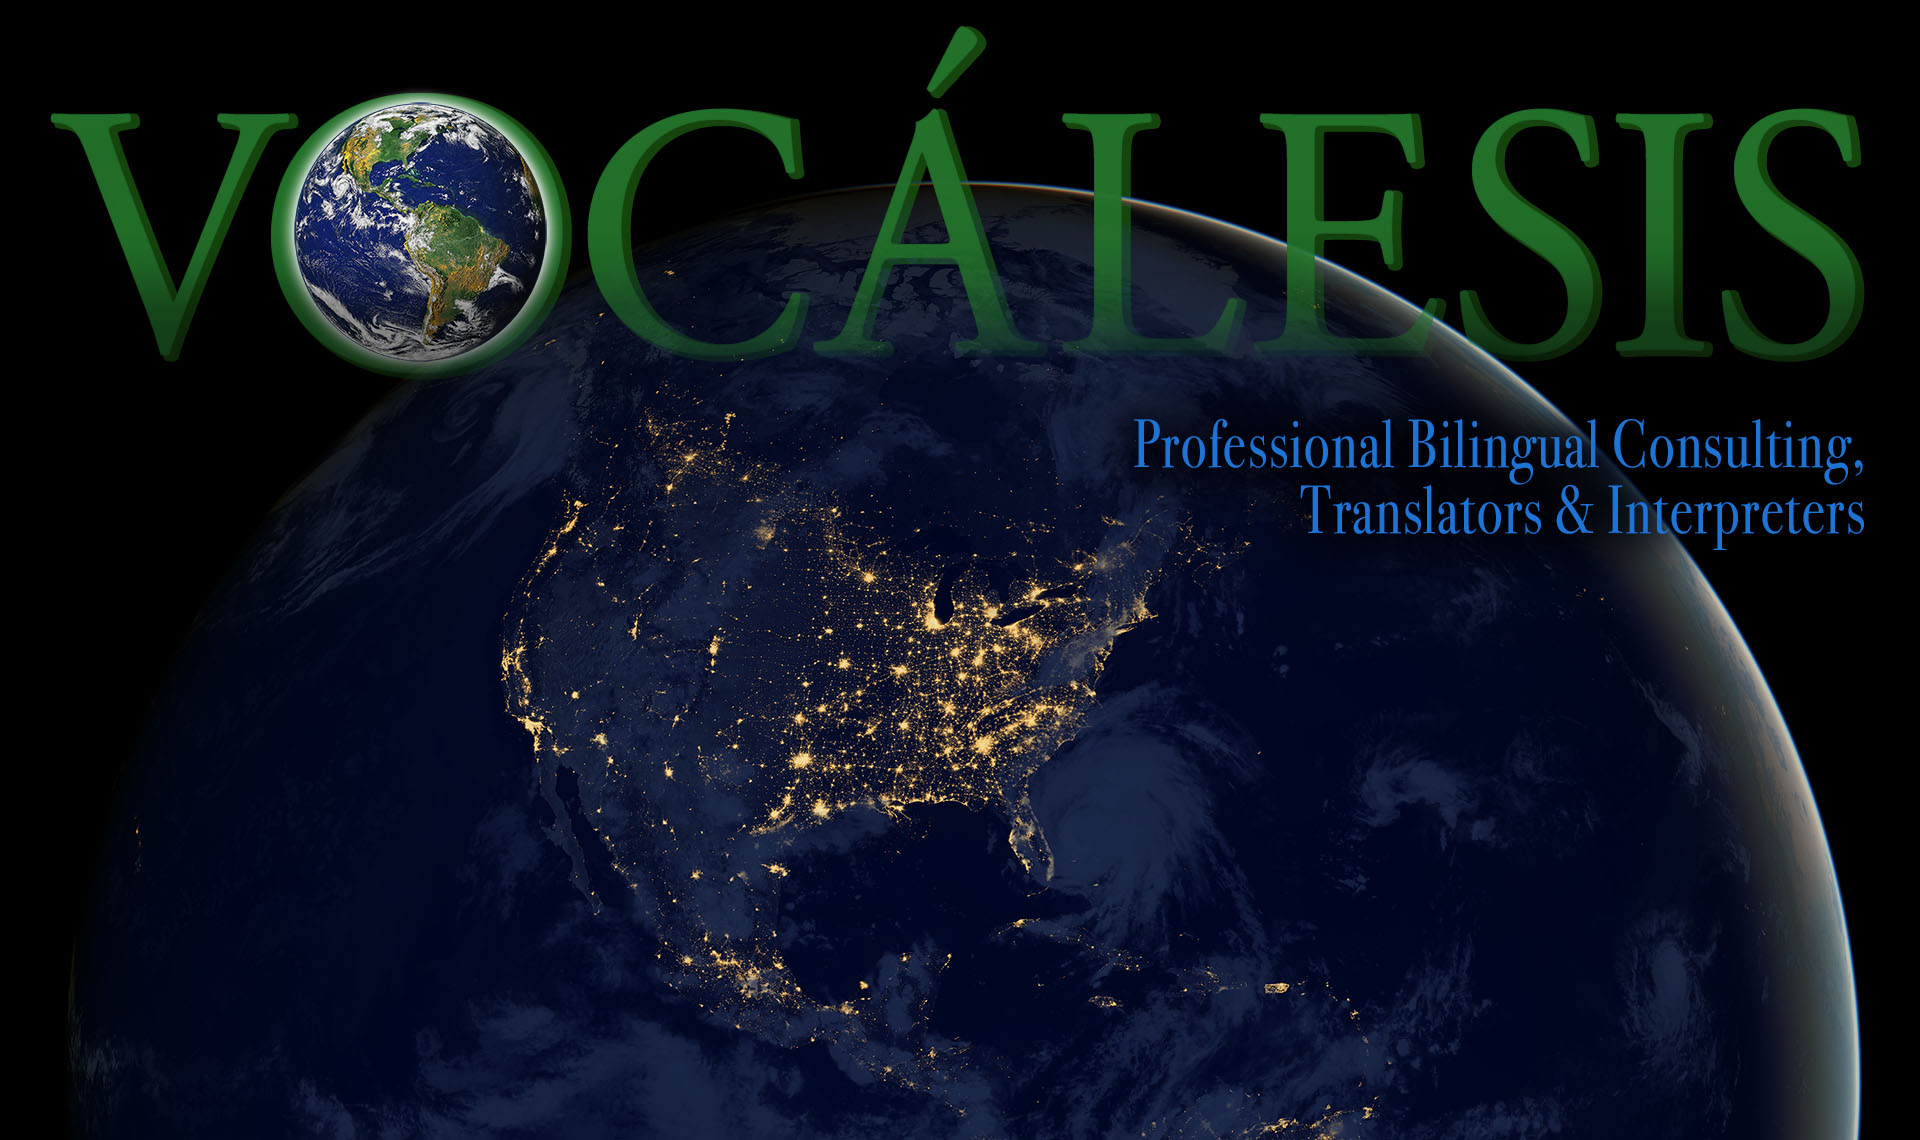 Traductores e Intérpretes Translators and Interpreters